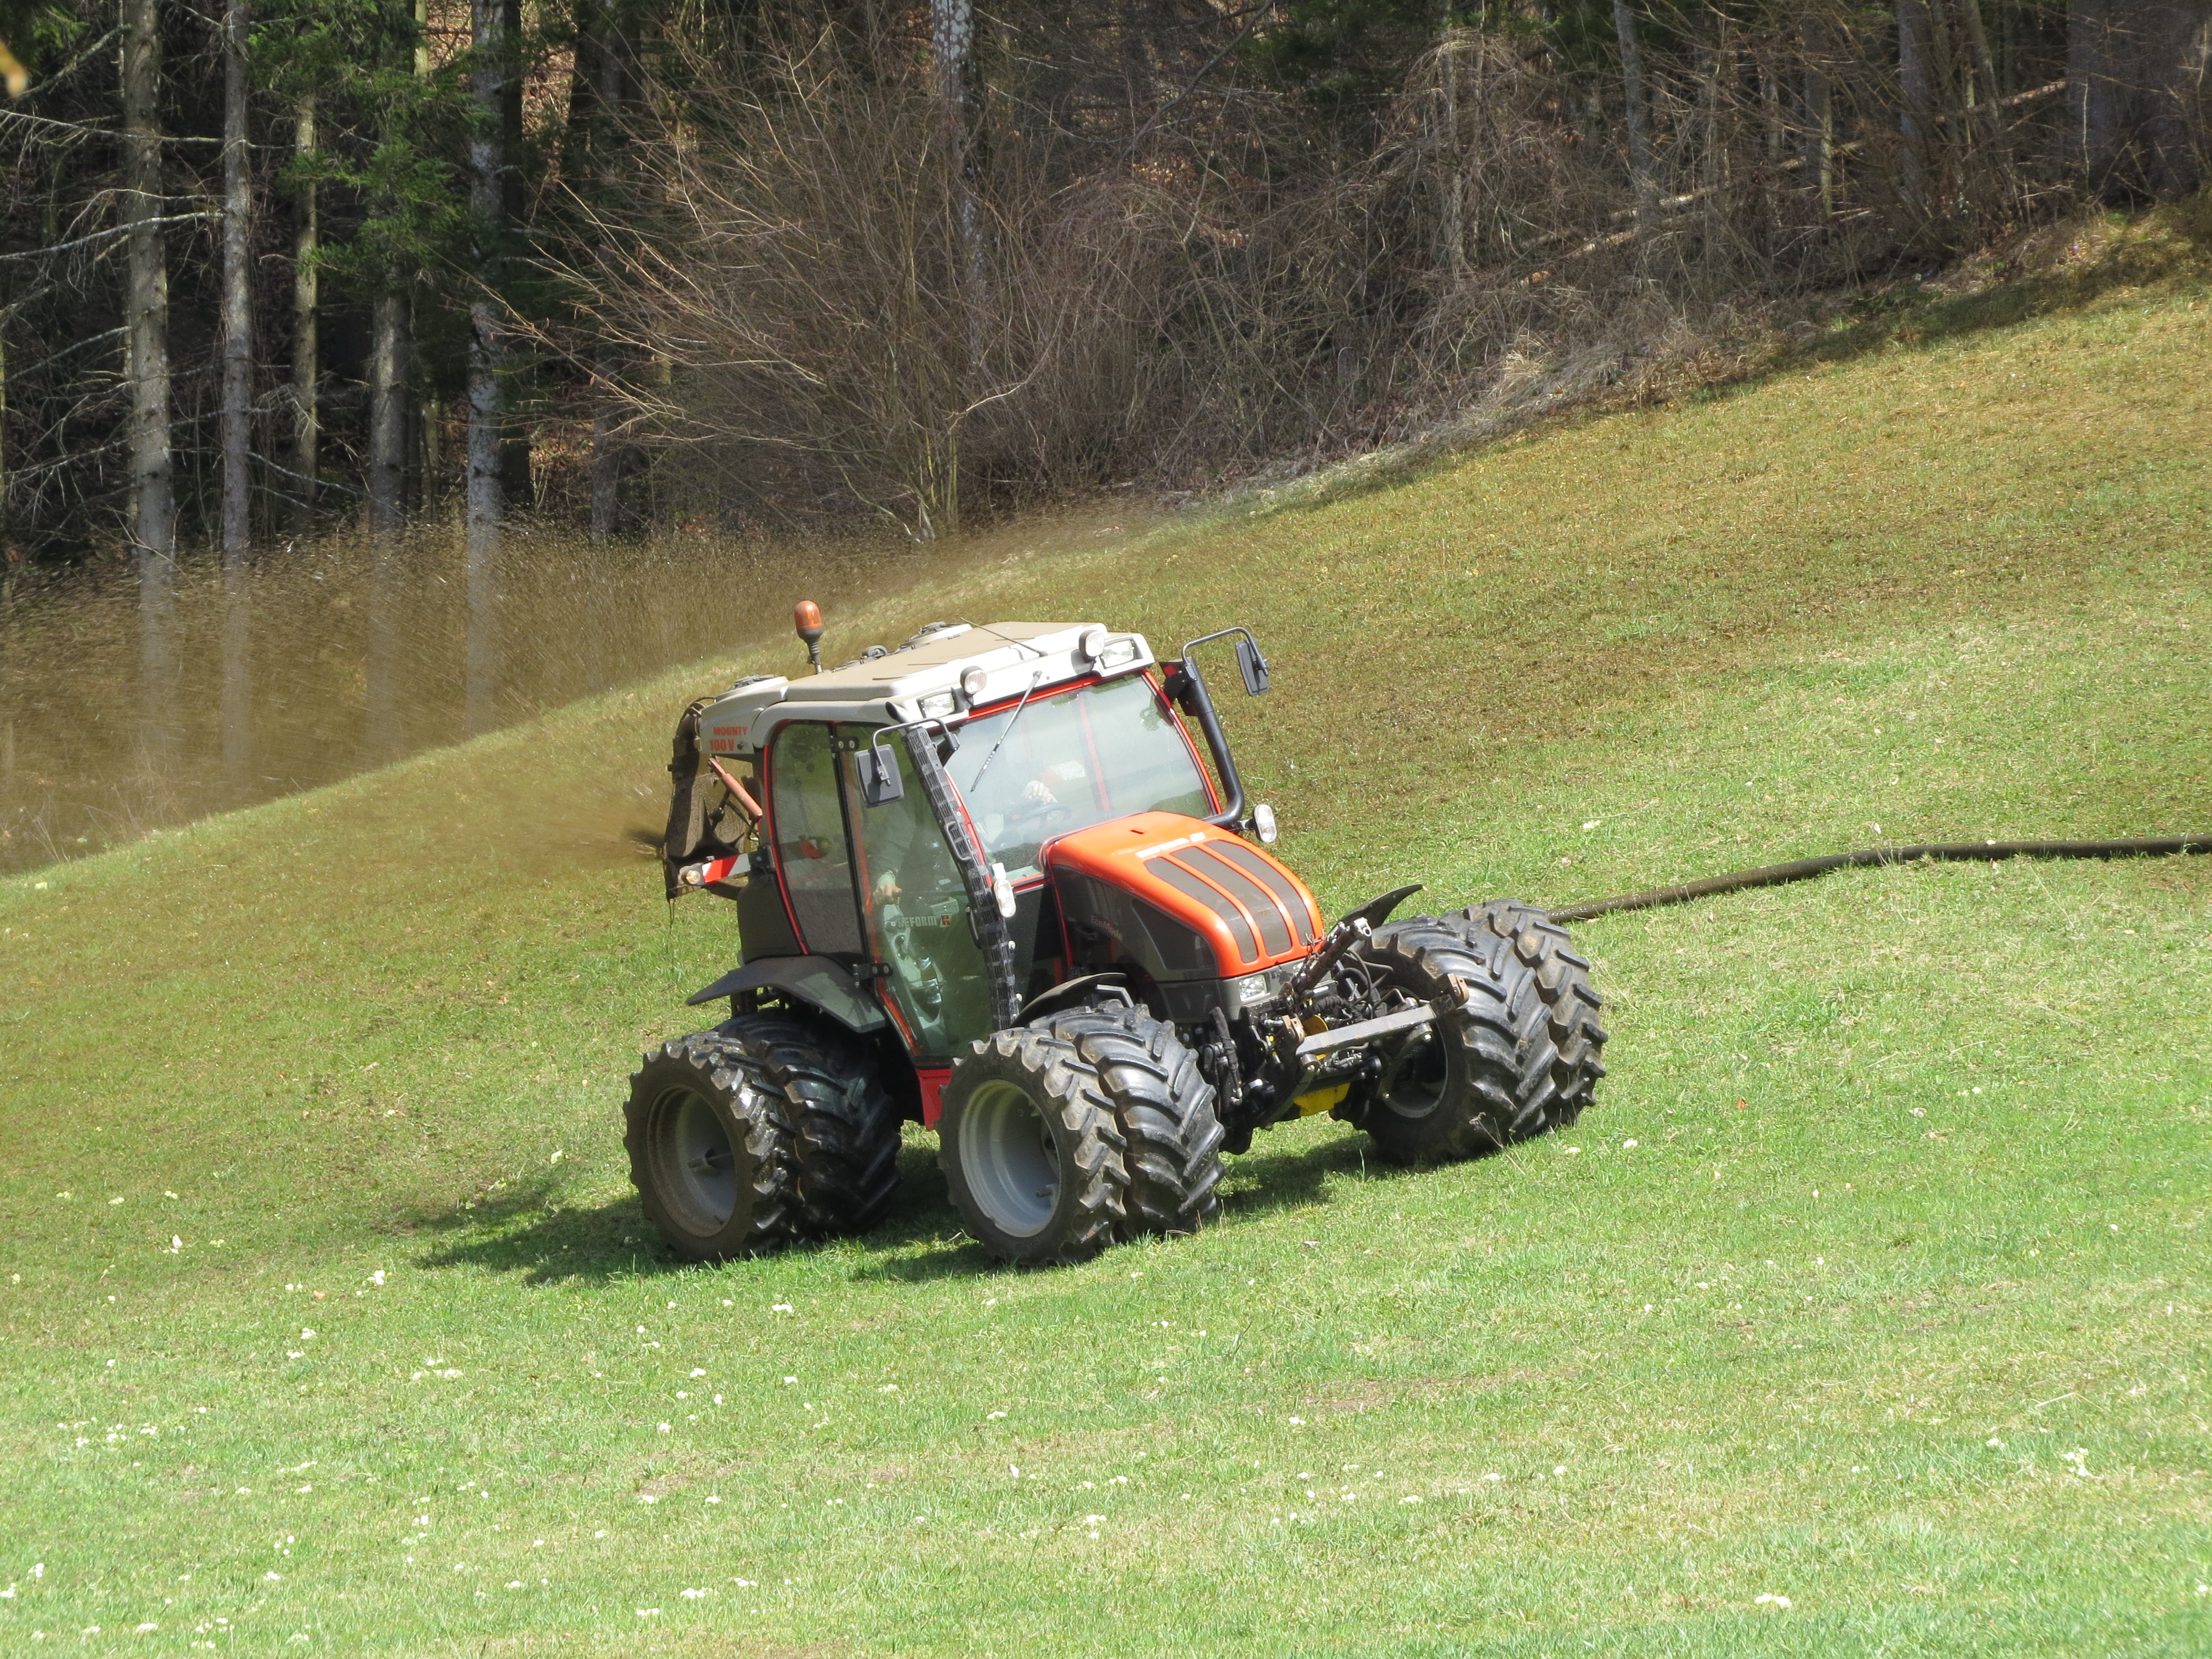 2018-04-07 (200) Mounty Reform 100 V with manure spreader at Haltgraben in Frankenfels